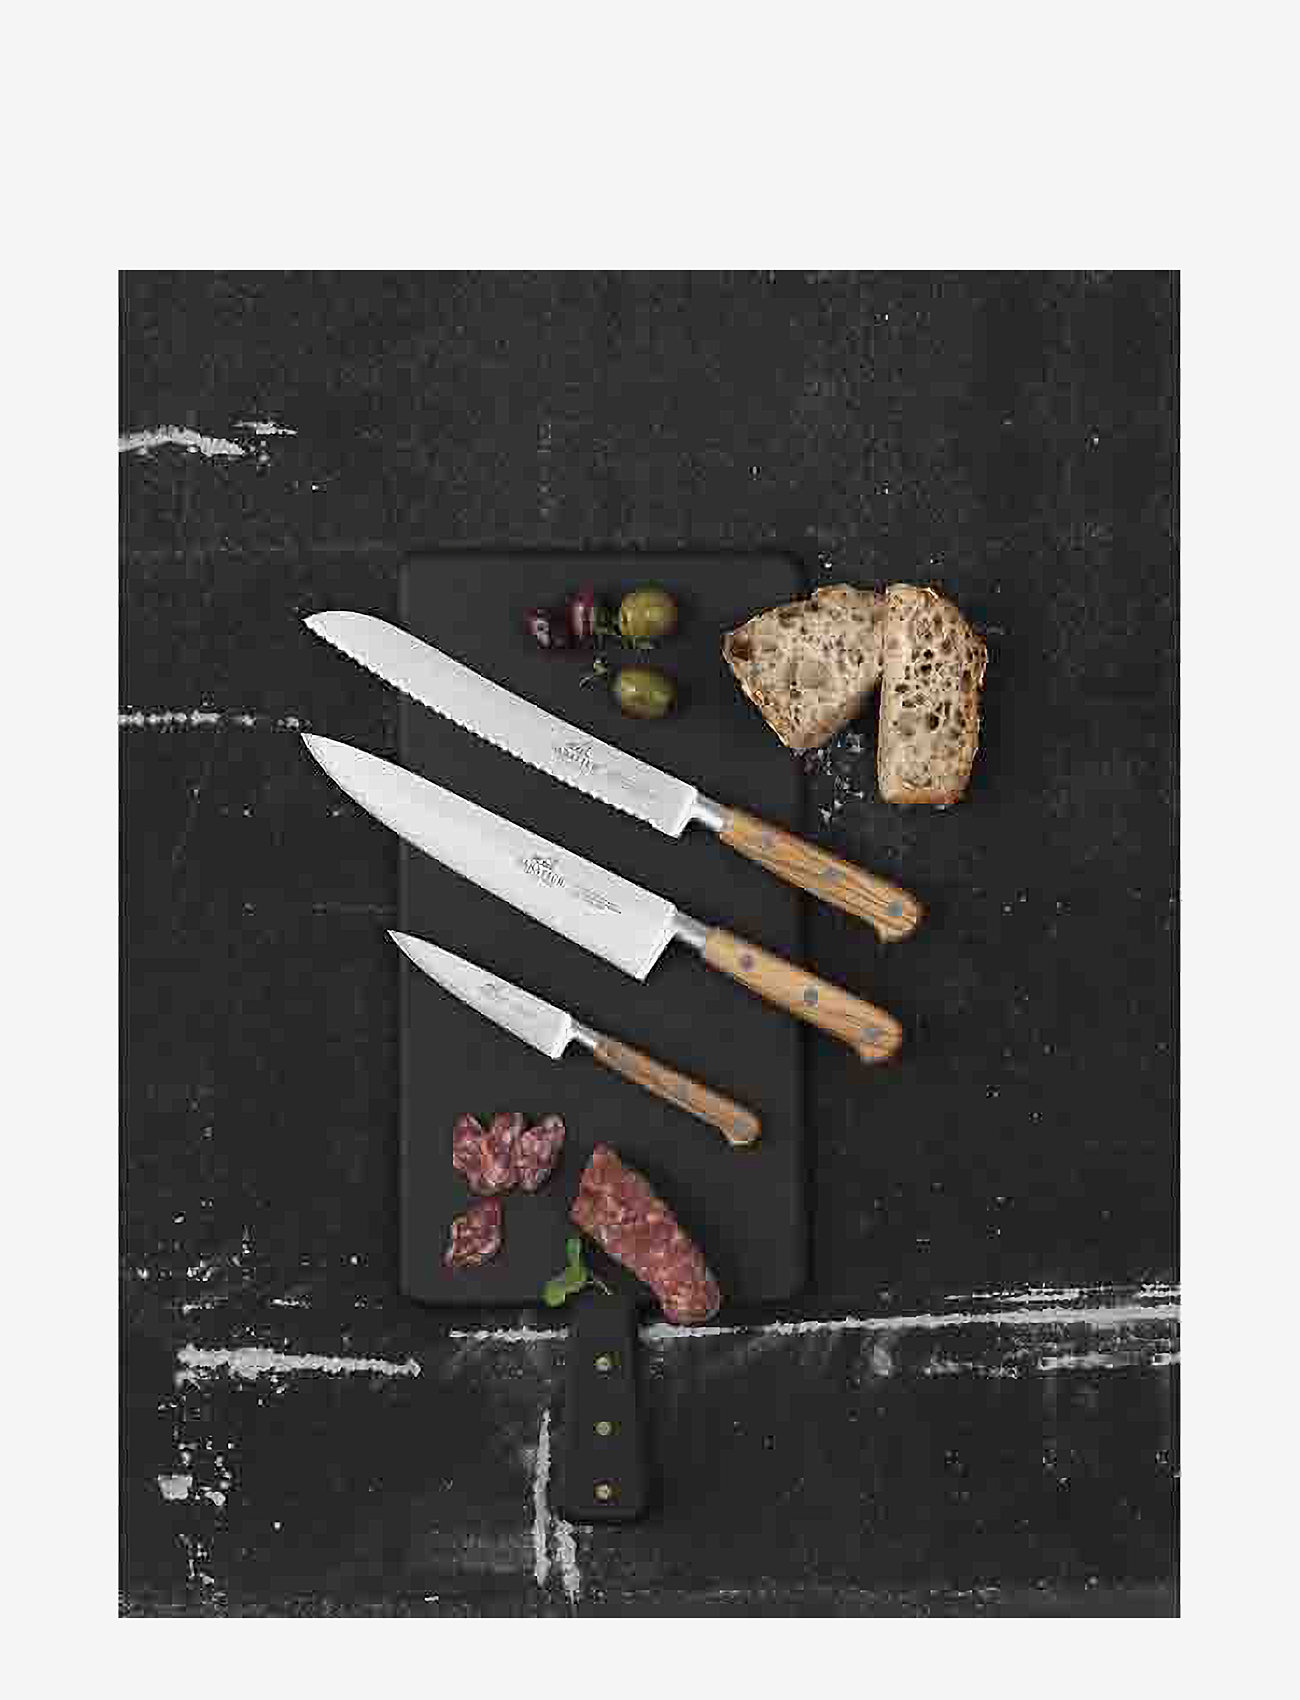 Lion Sabatier - Herb knife Ideal Provence 10cm - vihannesveitset - steel/wood - 1